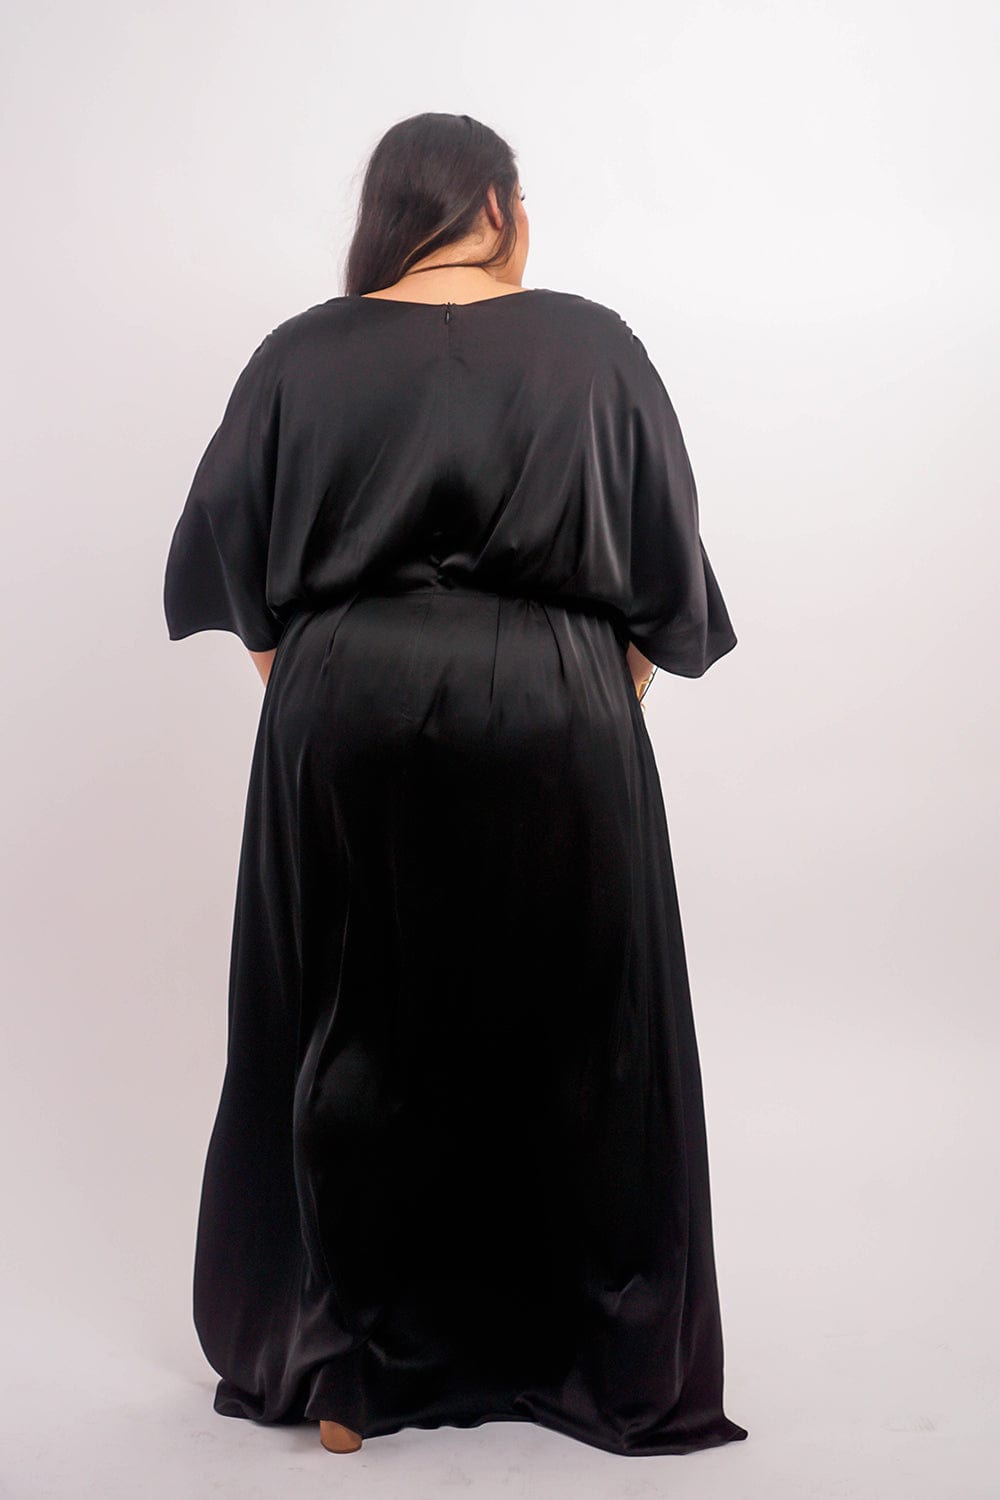 Chloe Dao DRESSES Black Satin Kasumi Maxi Dress